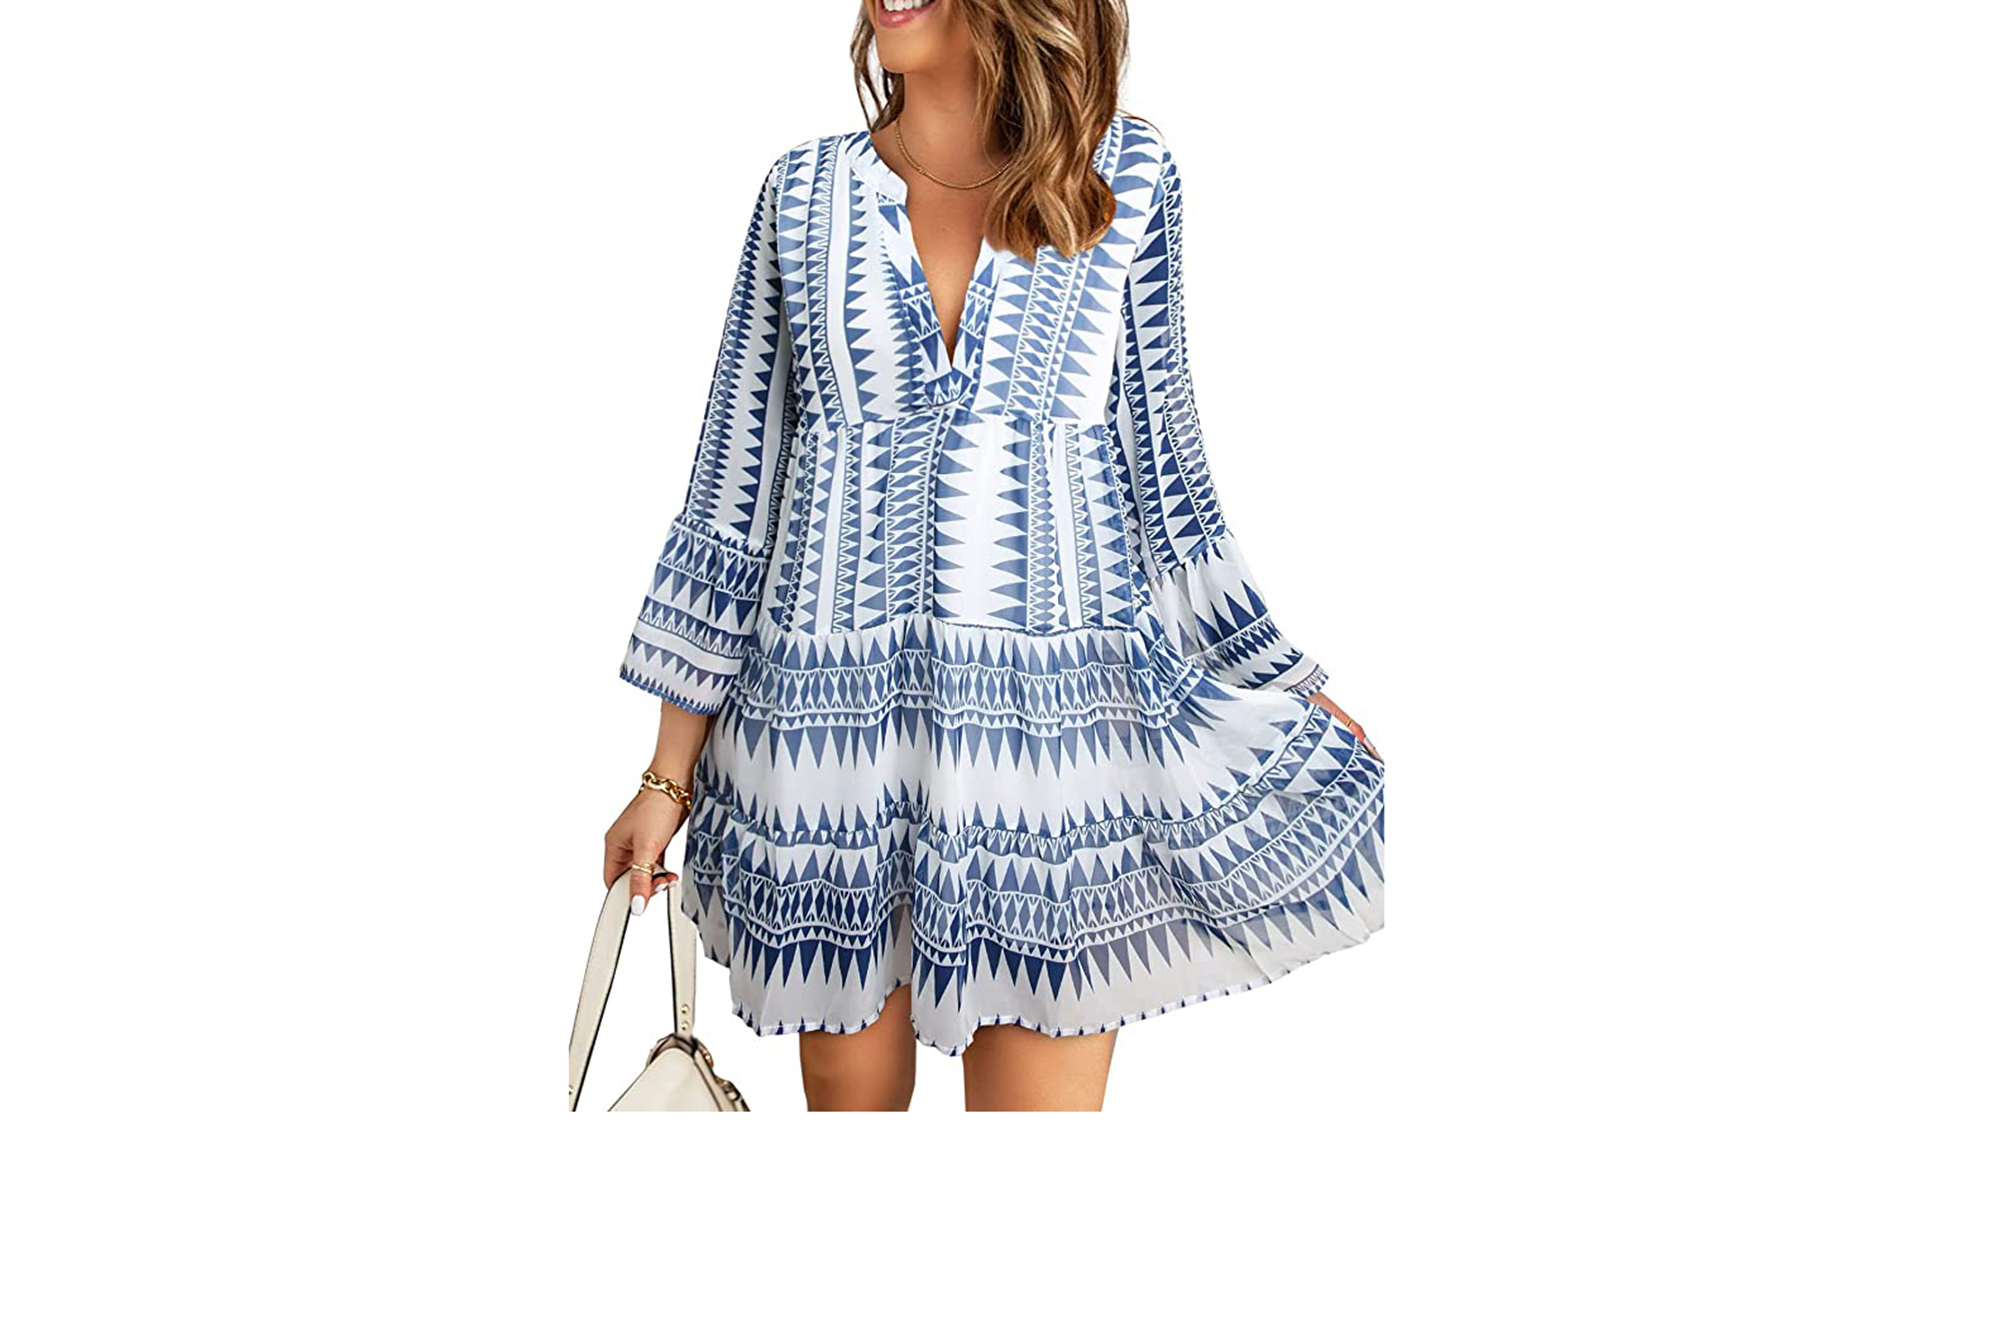 https://www.usmagazine.com/wp-content/uploads/2022/05/blue-boho-dress.jpg?quality=86&strip=all